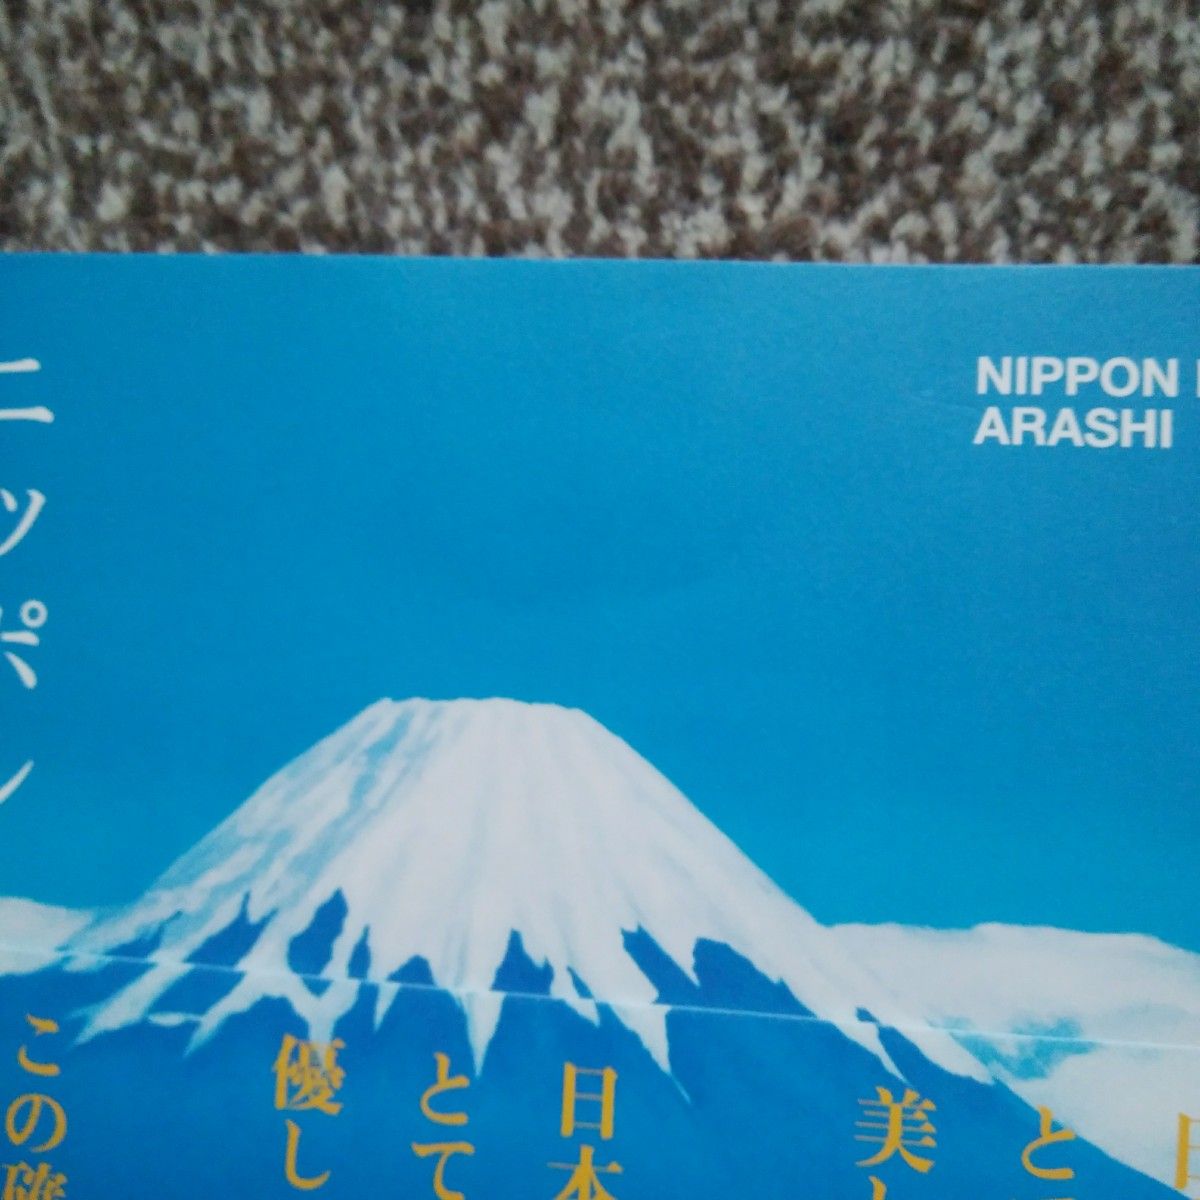 嵐◆ニッポンの嵐 NIPPON NO ARASHI 送料無料